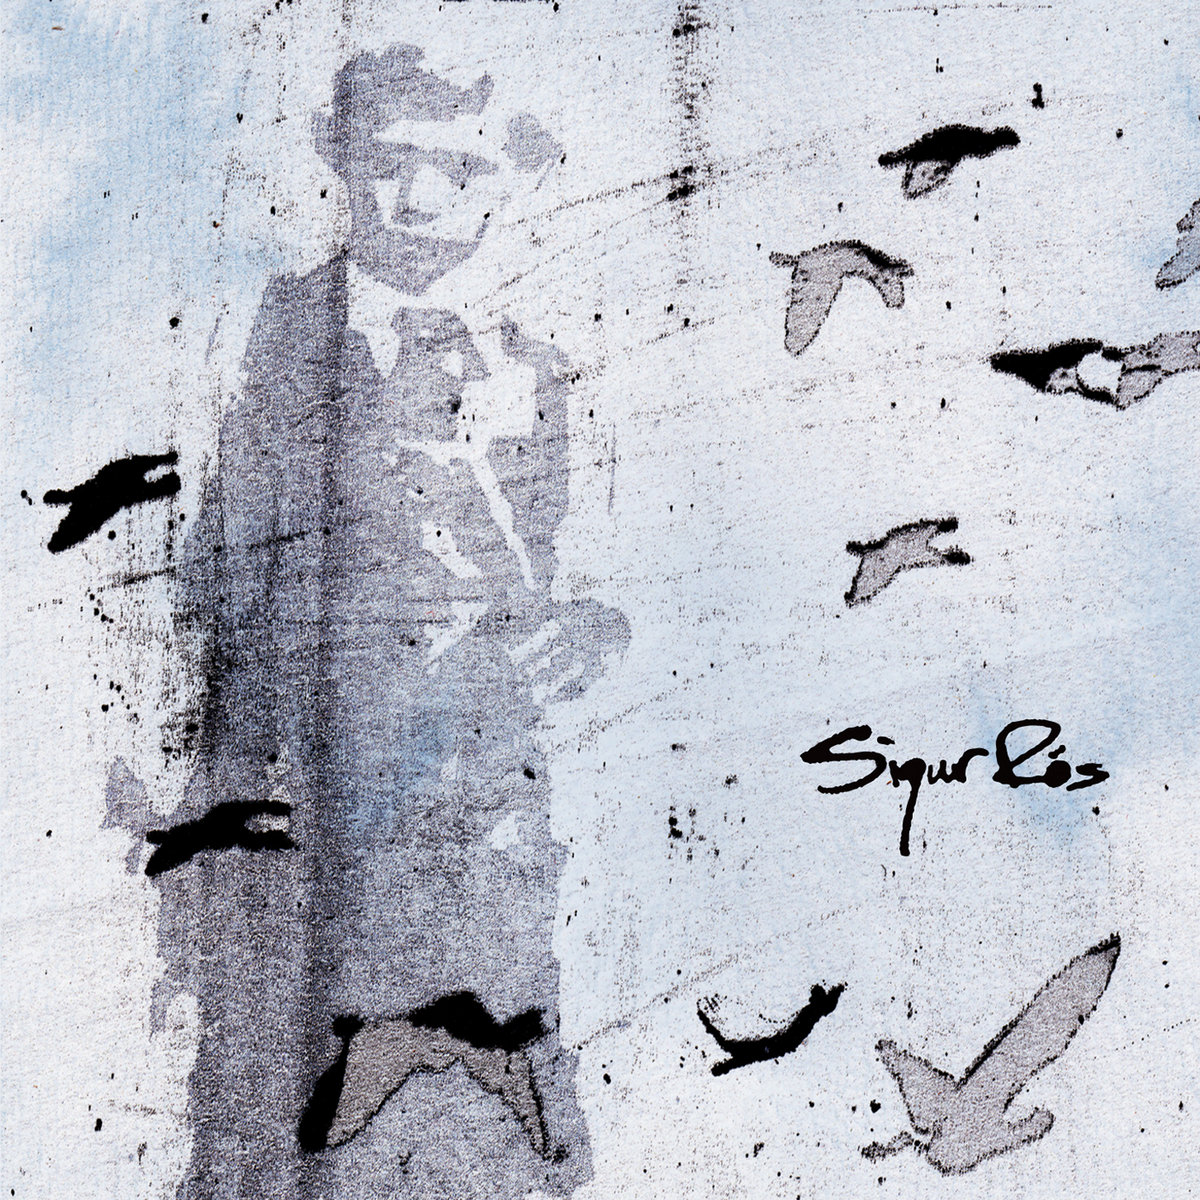 Sigur Rós — Sæglópur cover artwork